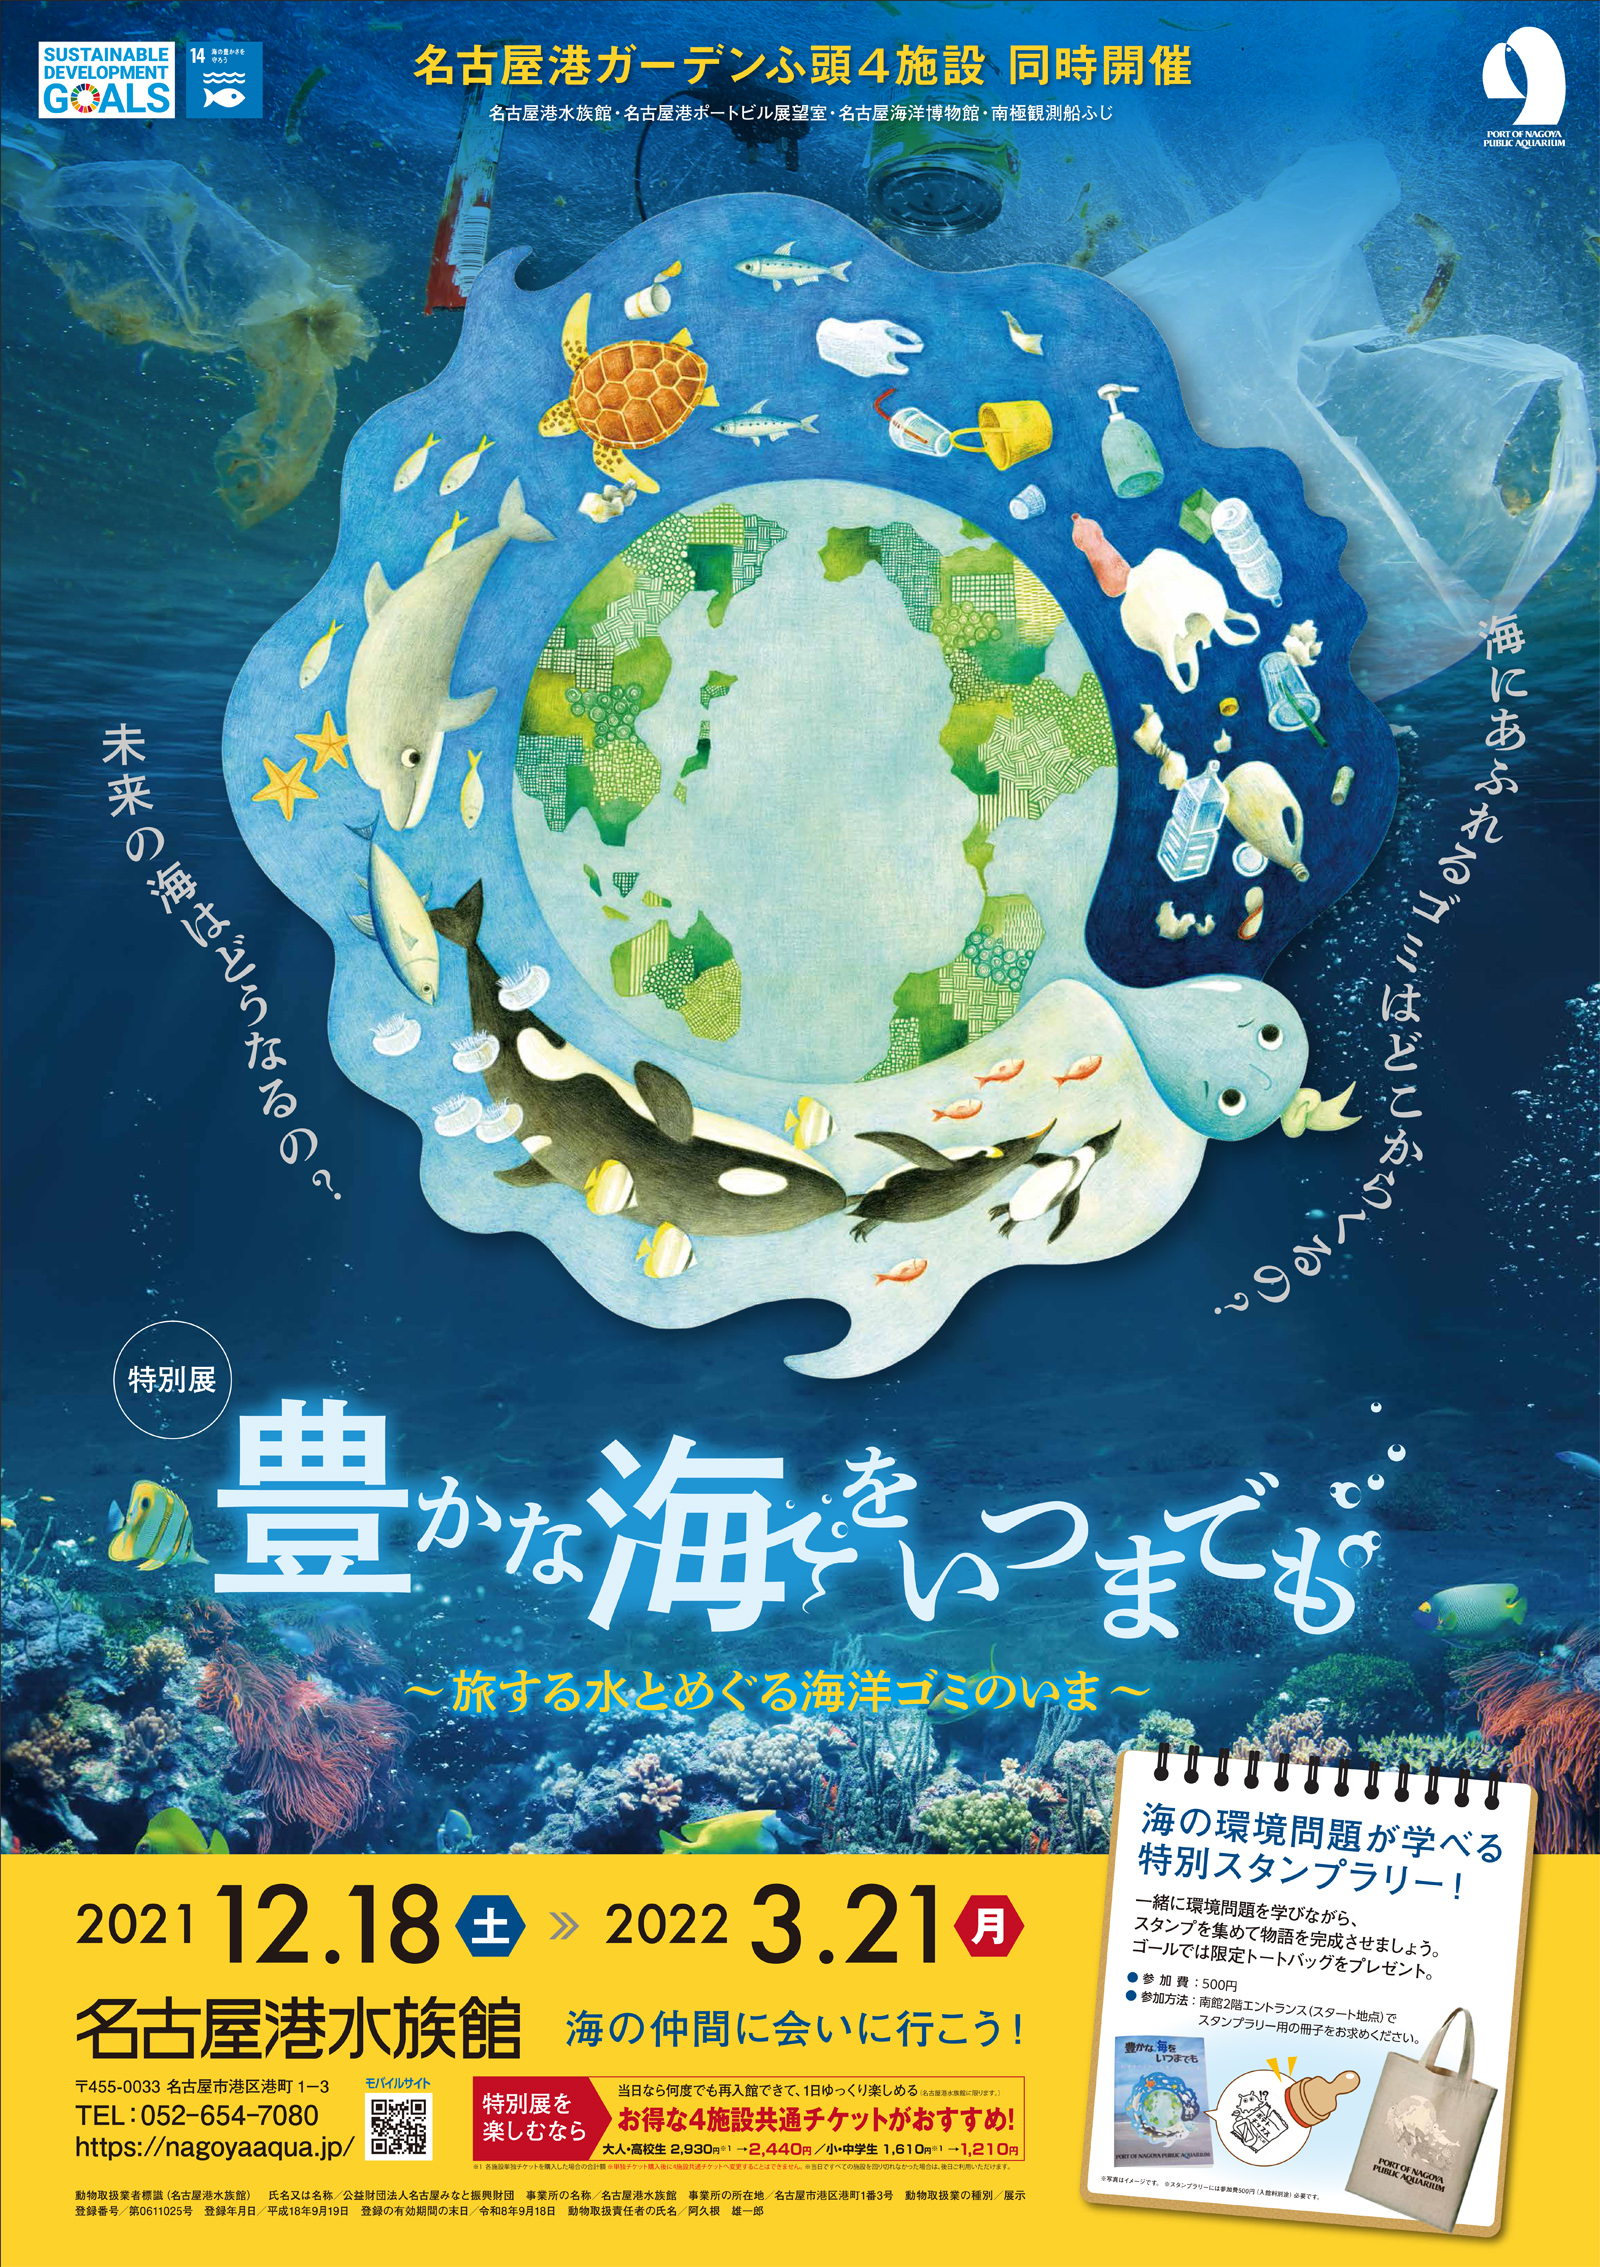 名古屋港水族館 特別展 豊かな海をいつまでも 旅する水とめぐる海洋ゴミのいま を開催します 公益財団法人 名古屋みなと振興財団のプレスリリース